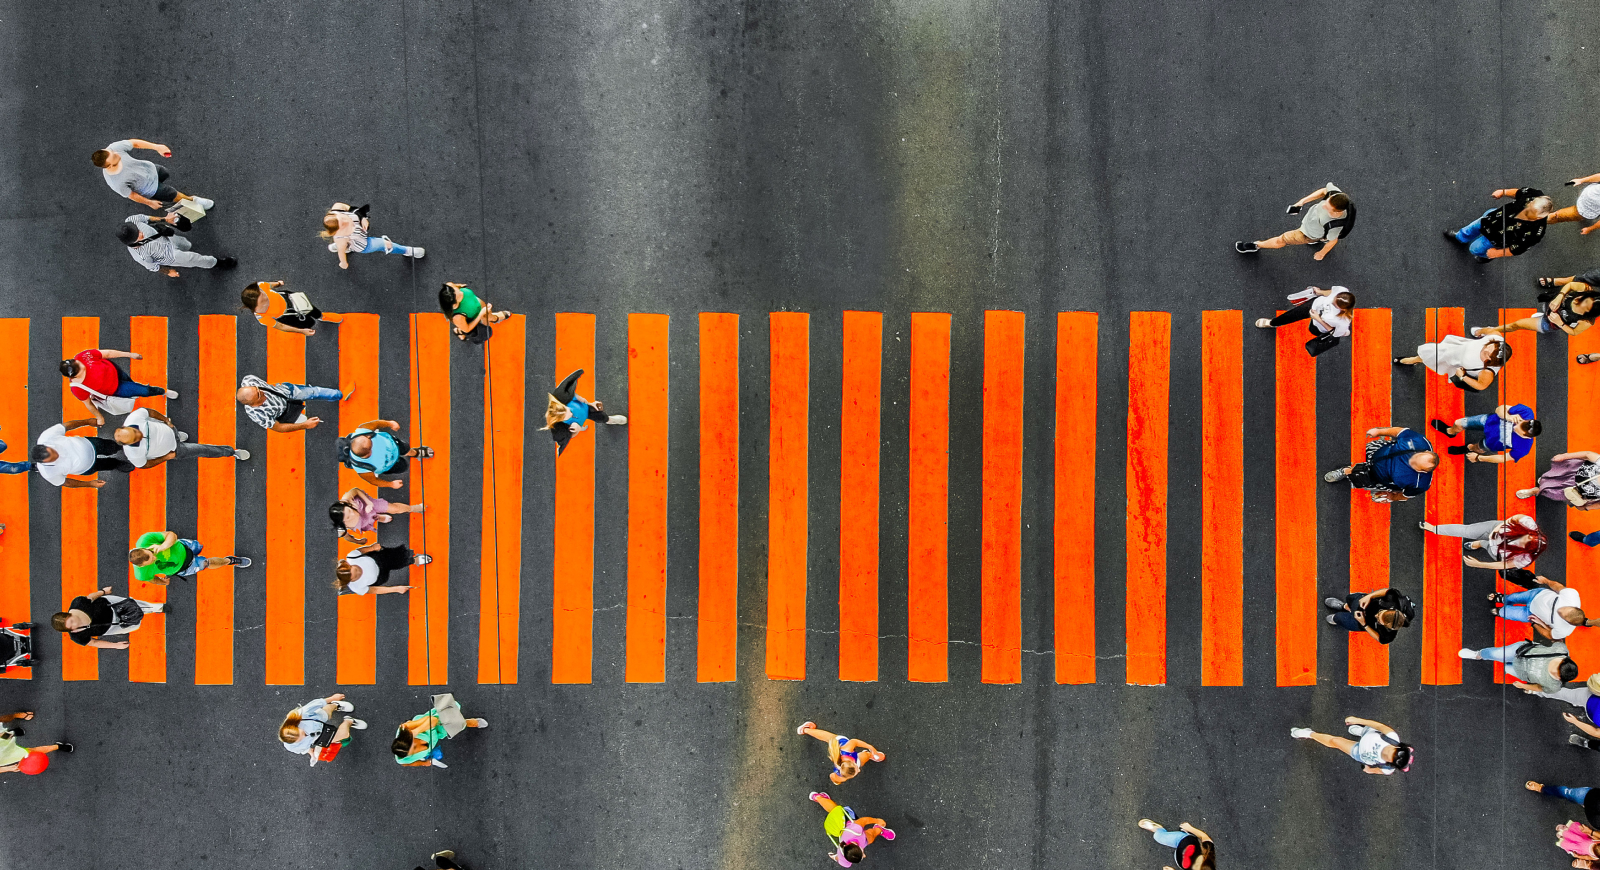 peolpe walking on an orange pedestrian crossing viewed from above